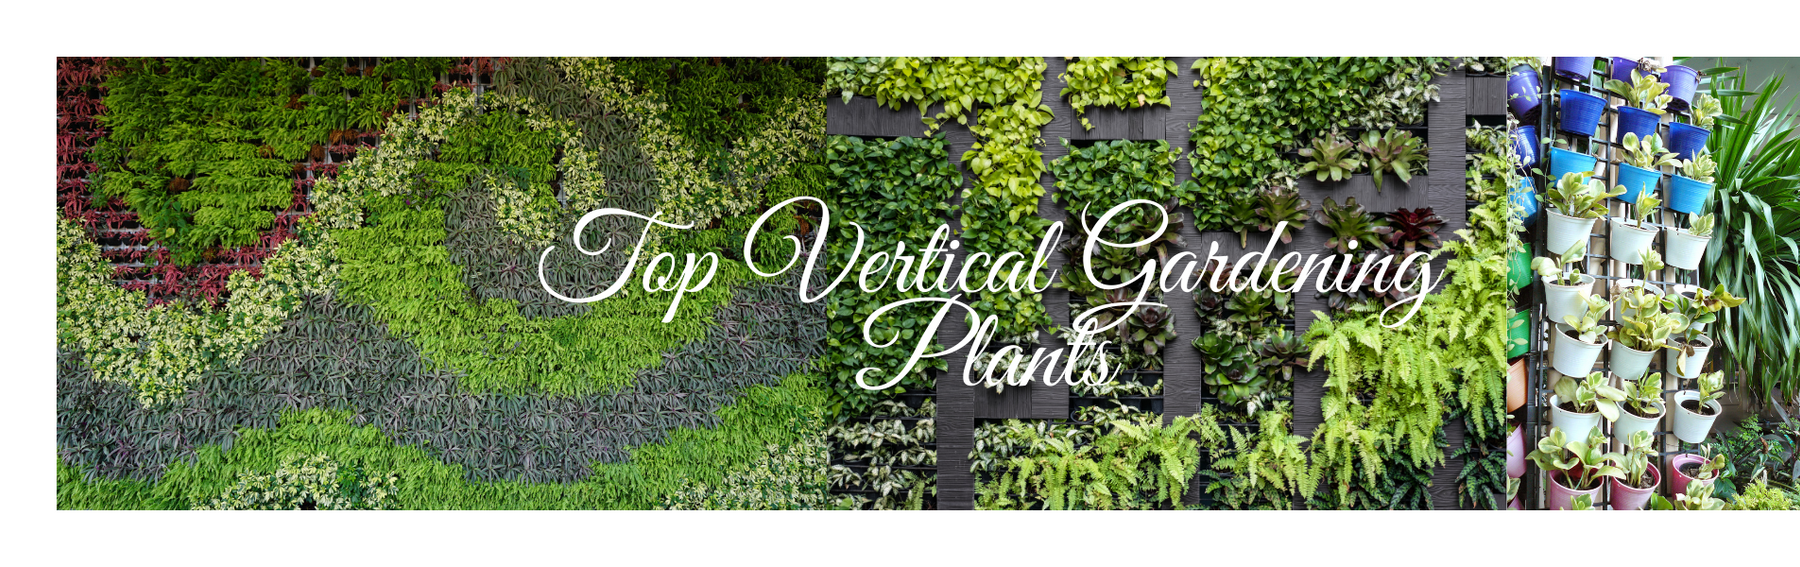 Best Plants For Indoor Vertical Gardening - CGASPL